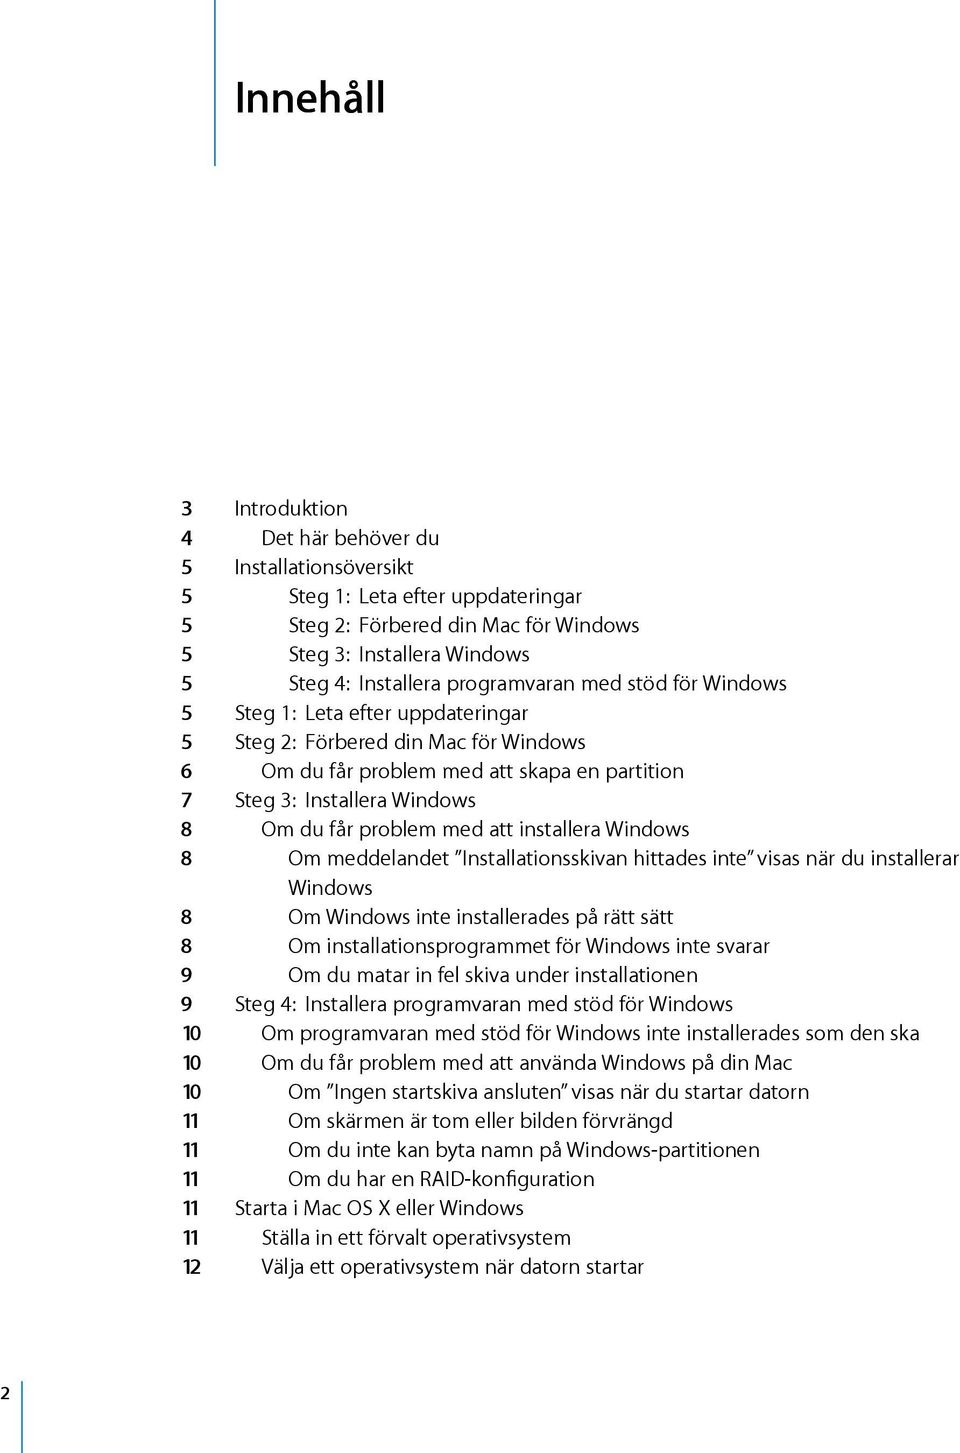 problem med att installera Windows 8 Om meddelandet Installationsskivan hittades inte visas när du installerar Windows 8 Om Windows inte installerades på rätt sätt 8 Om installationsprogrammet för